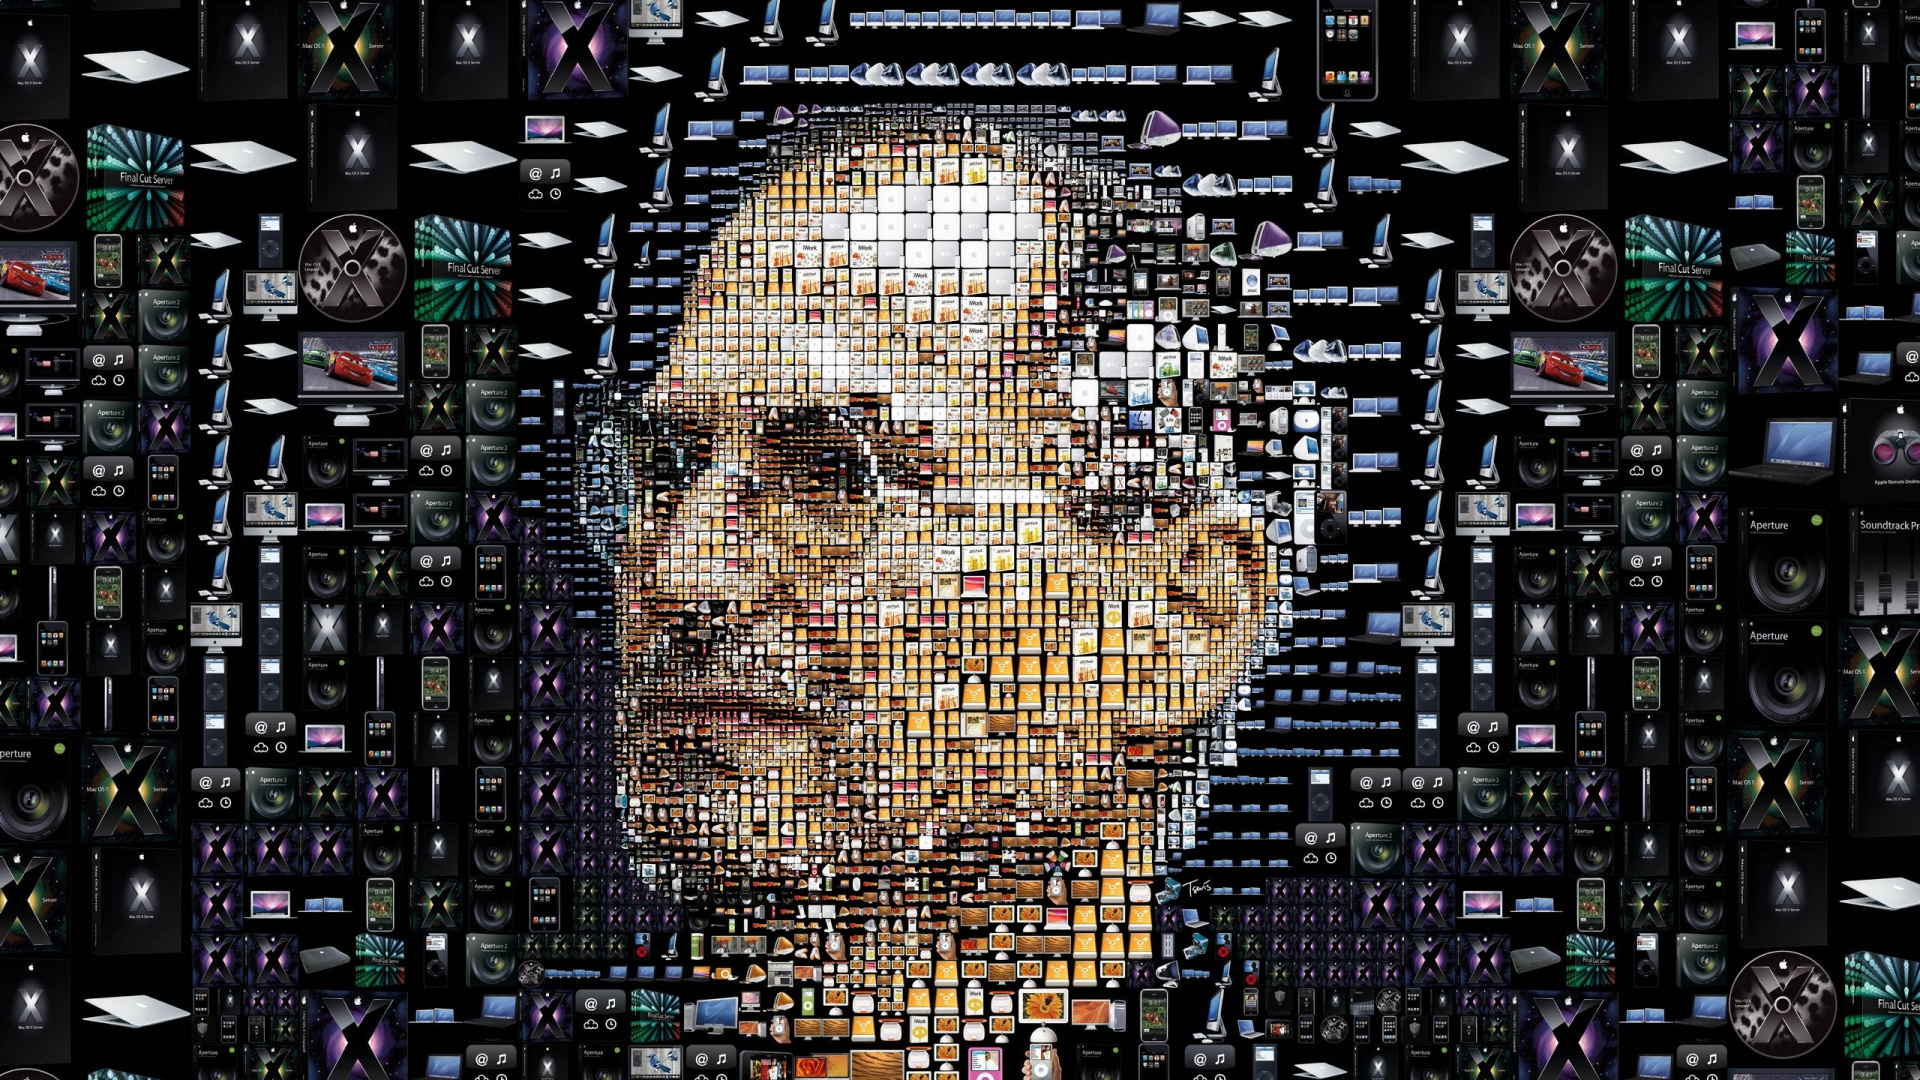 Steve Jobs, Kunst, Metropole, Apple, Kreative Kunst. Wallpaper in 1920x1080 Resolution